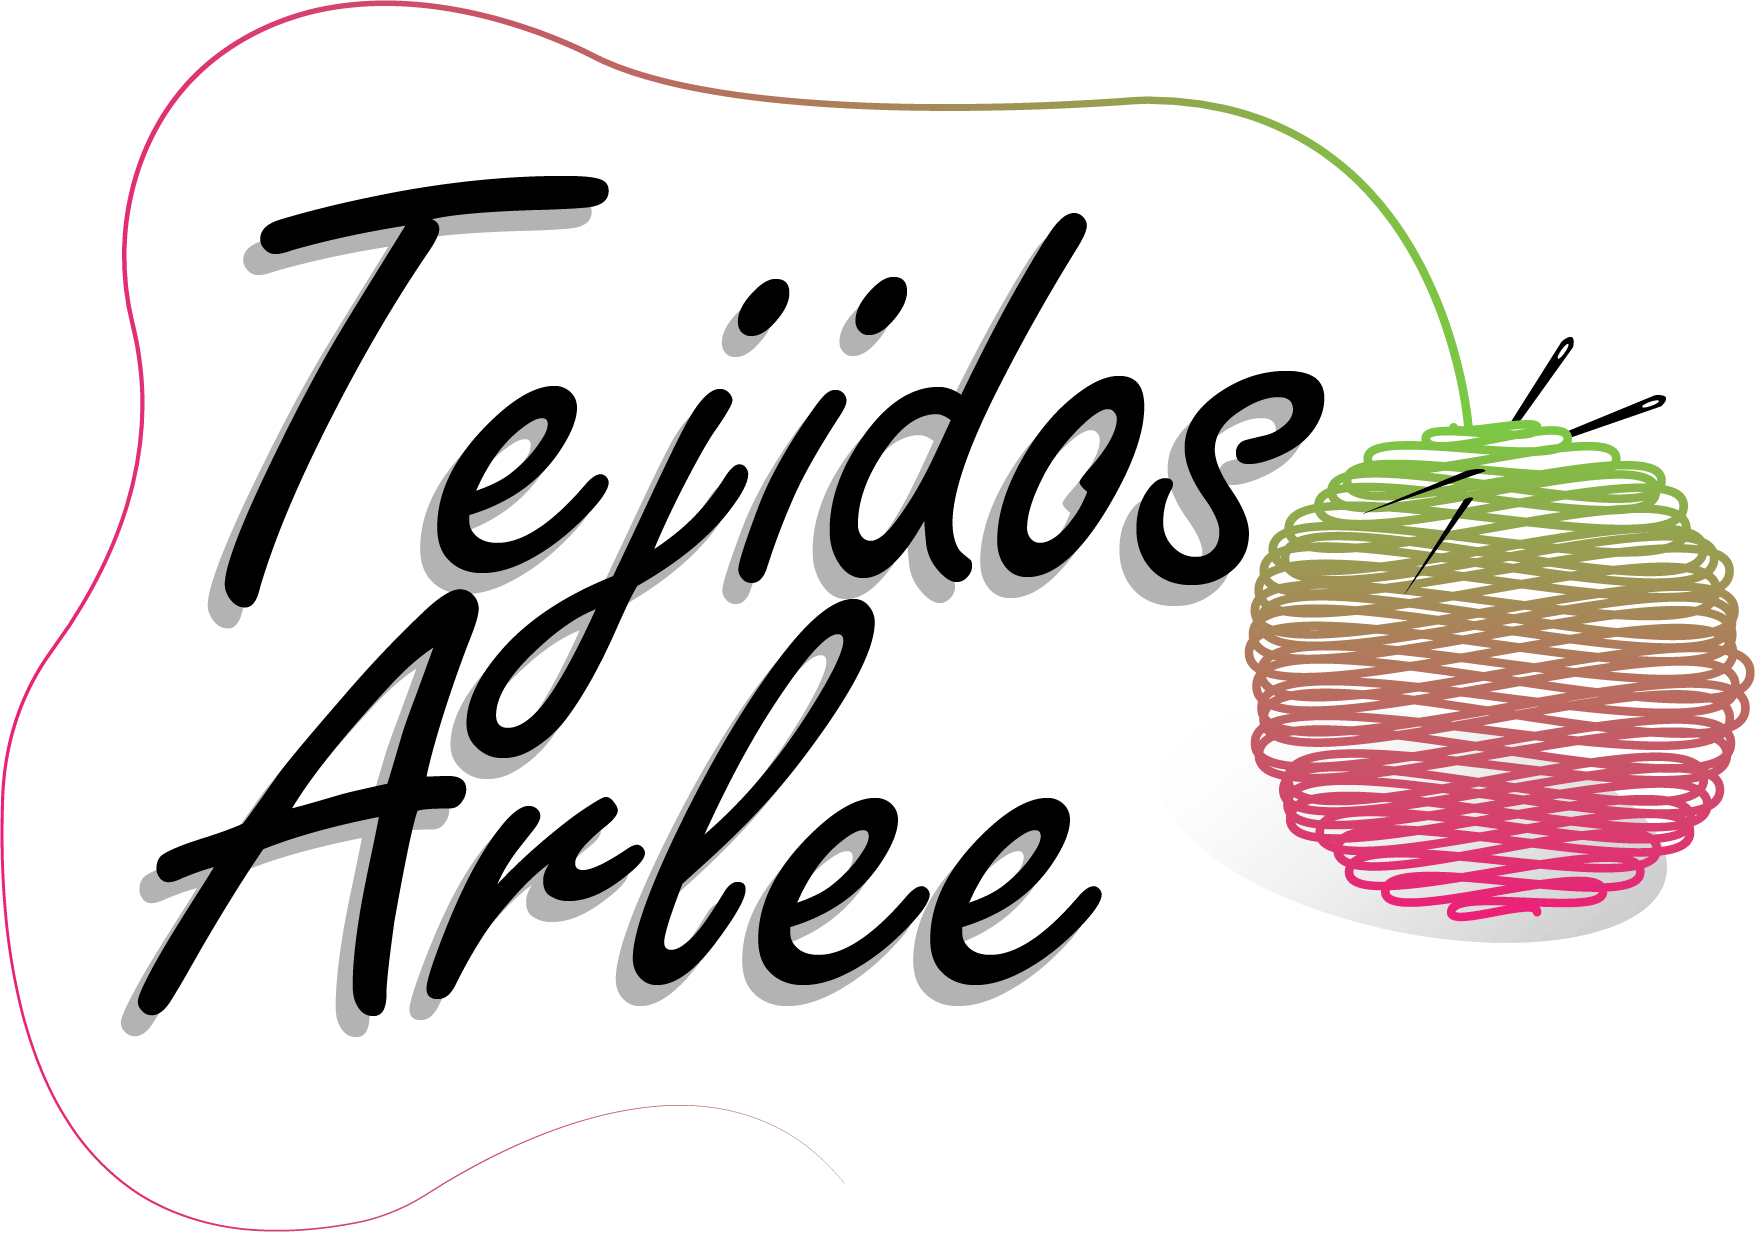 Tejidos Arlee